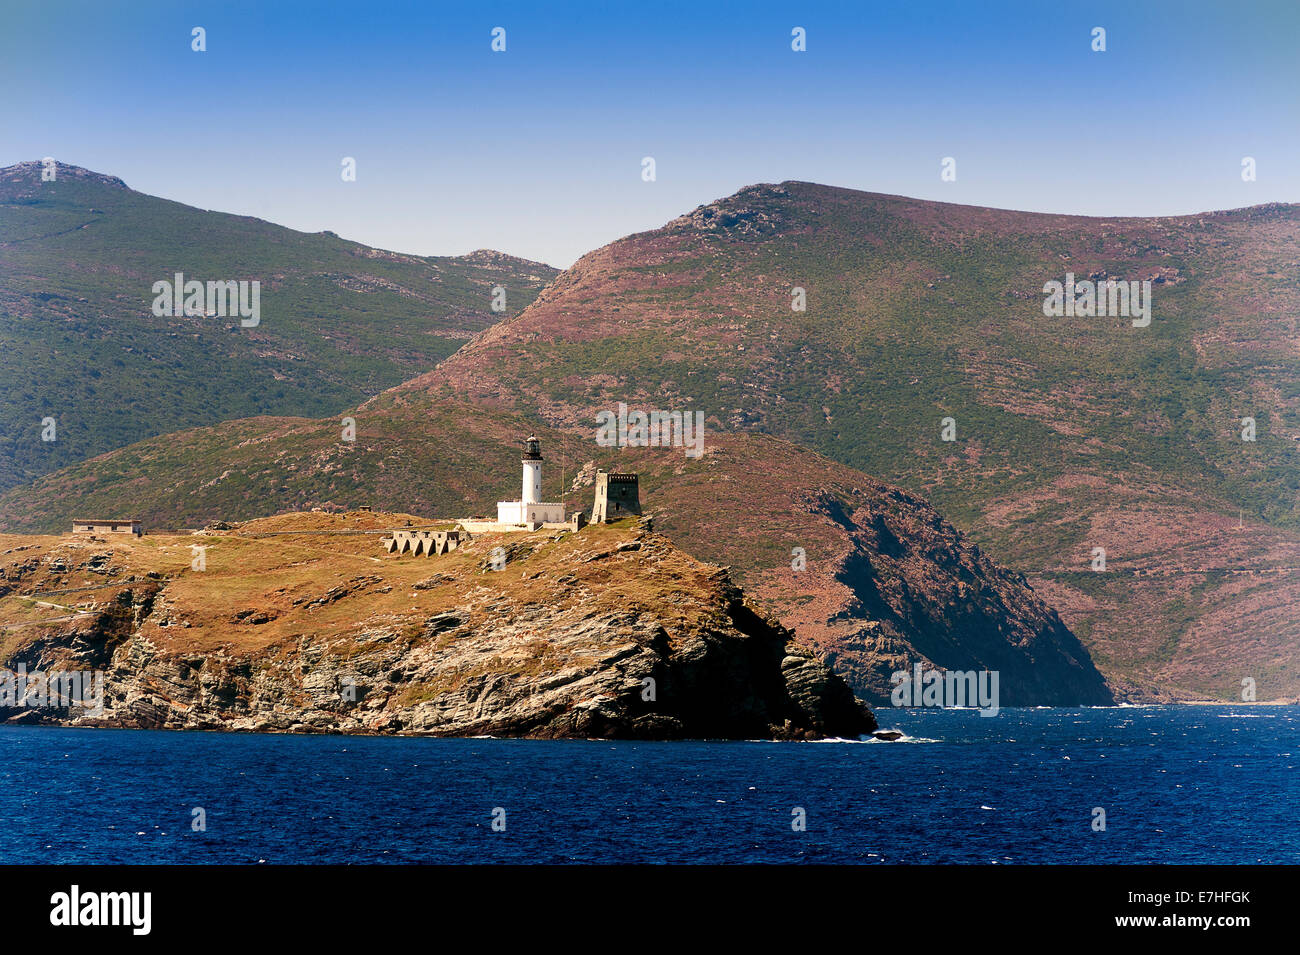 Europe, France, Haute-Corse, Cap Corse, Barcaggio. Giraglia island and its lighthouse. Stock Photo